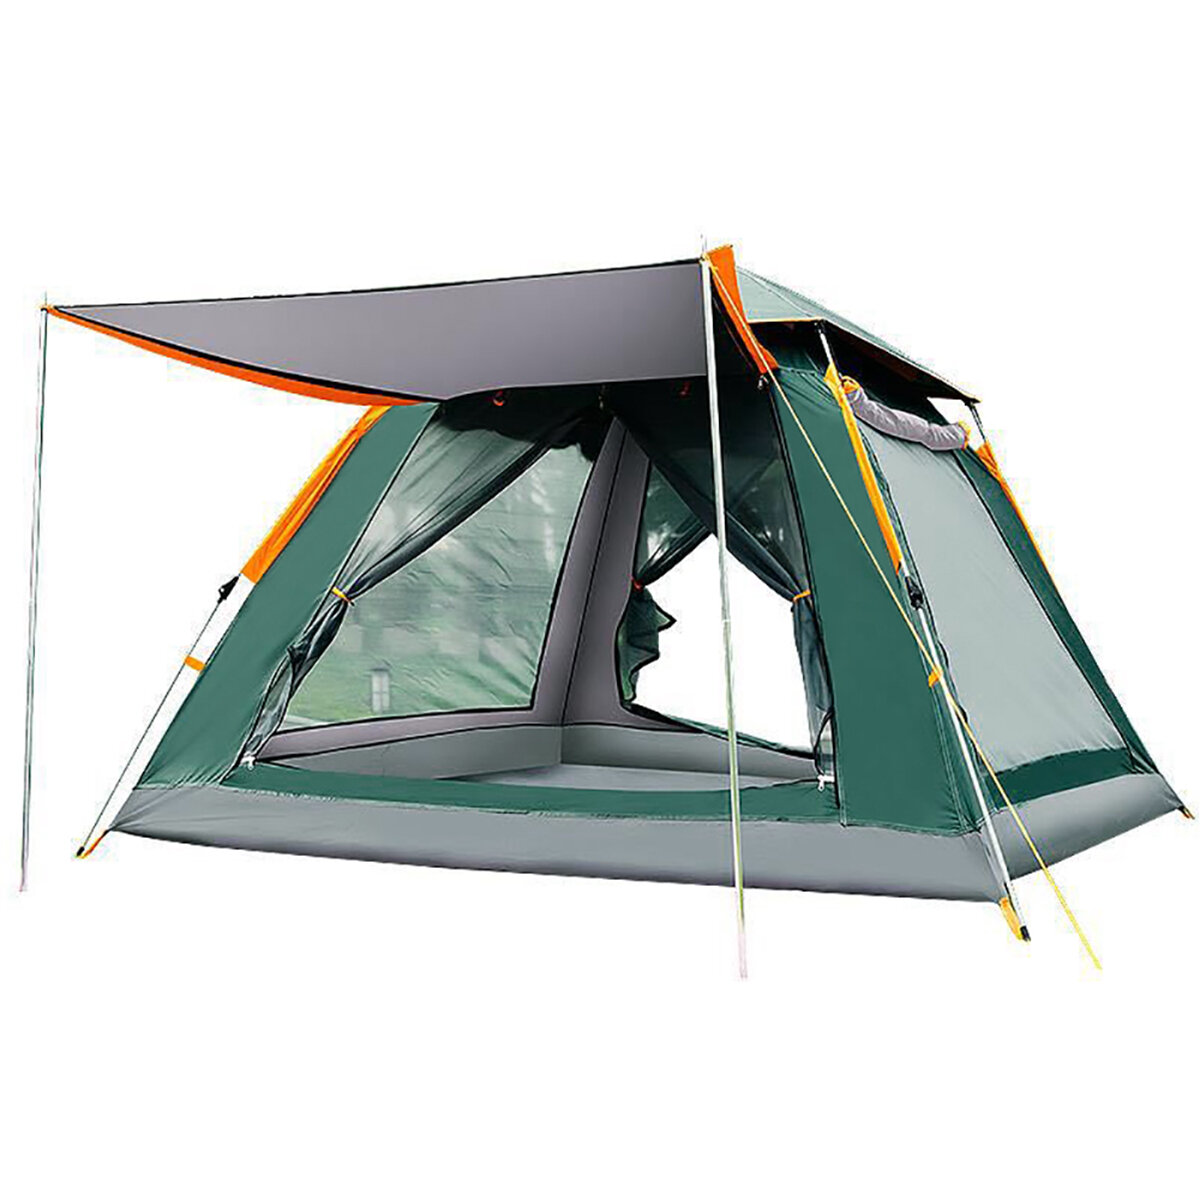 Tente de camping à ouverture automatique pour 3 à 4 personnes/5 à 8 personnes Tissu Oxford 210T Protection solaire à double pont Tente étanche Abri solaire Tente ouverte pour la randonnée Escalade